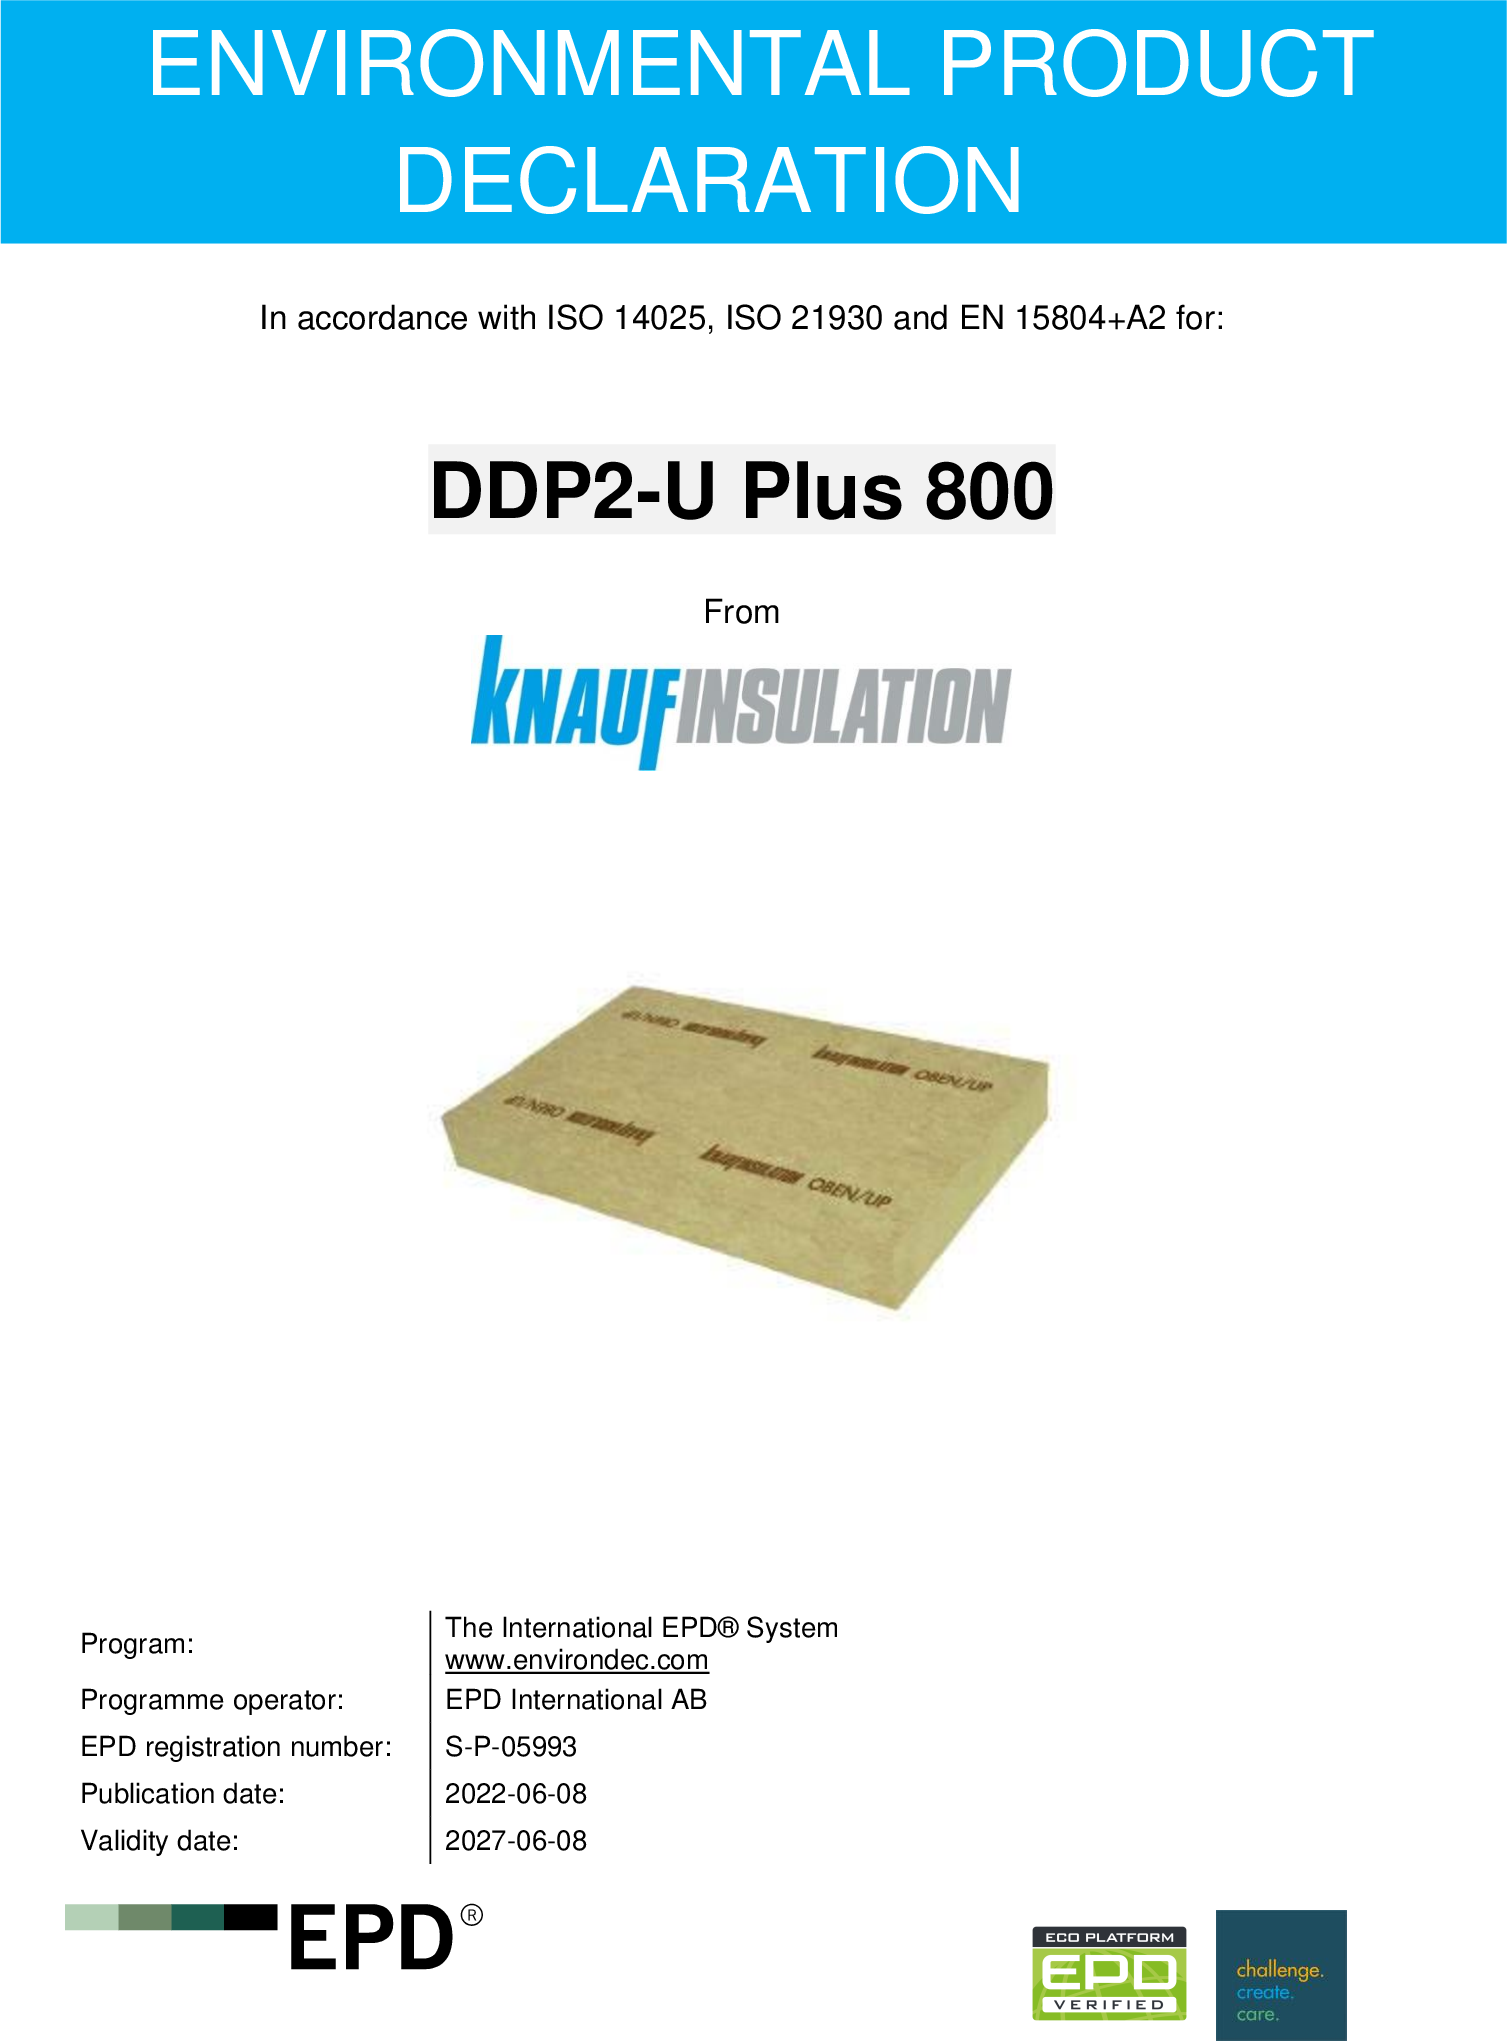 DDP2-U Plus 800